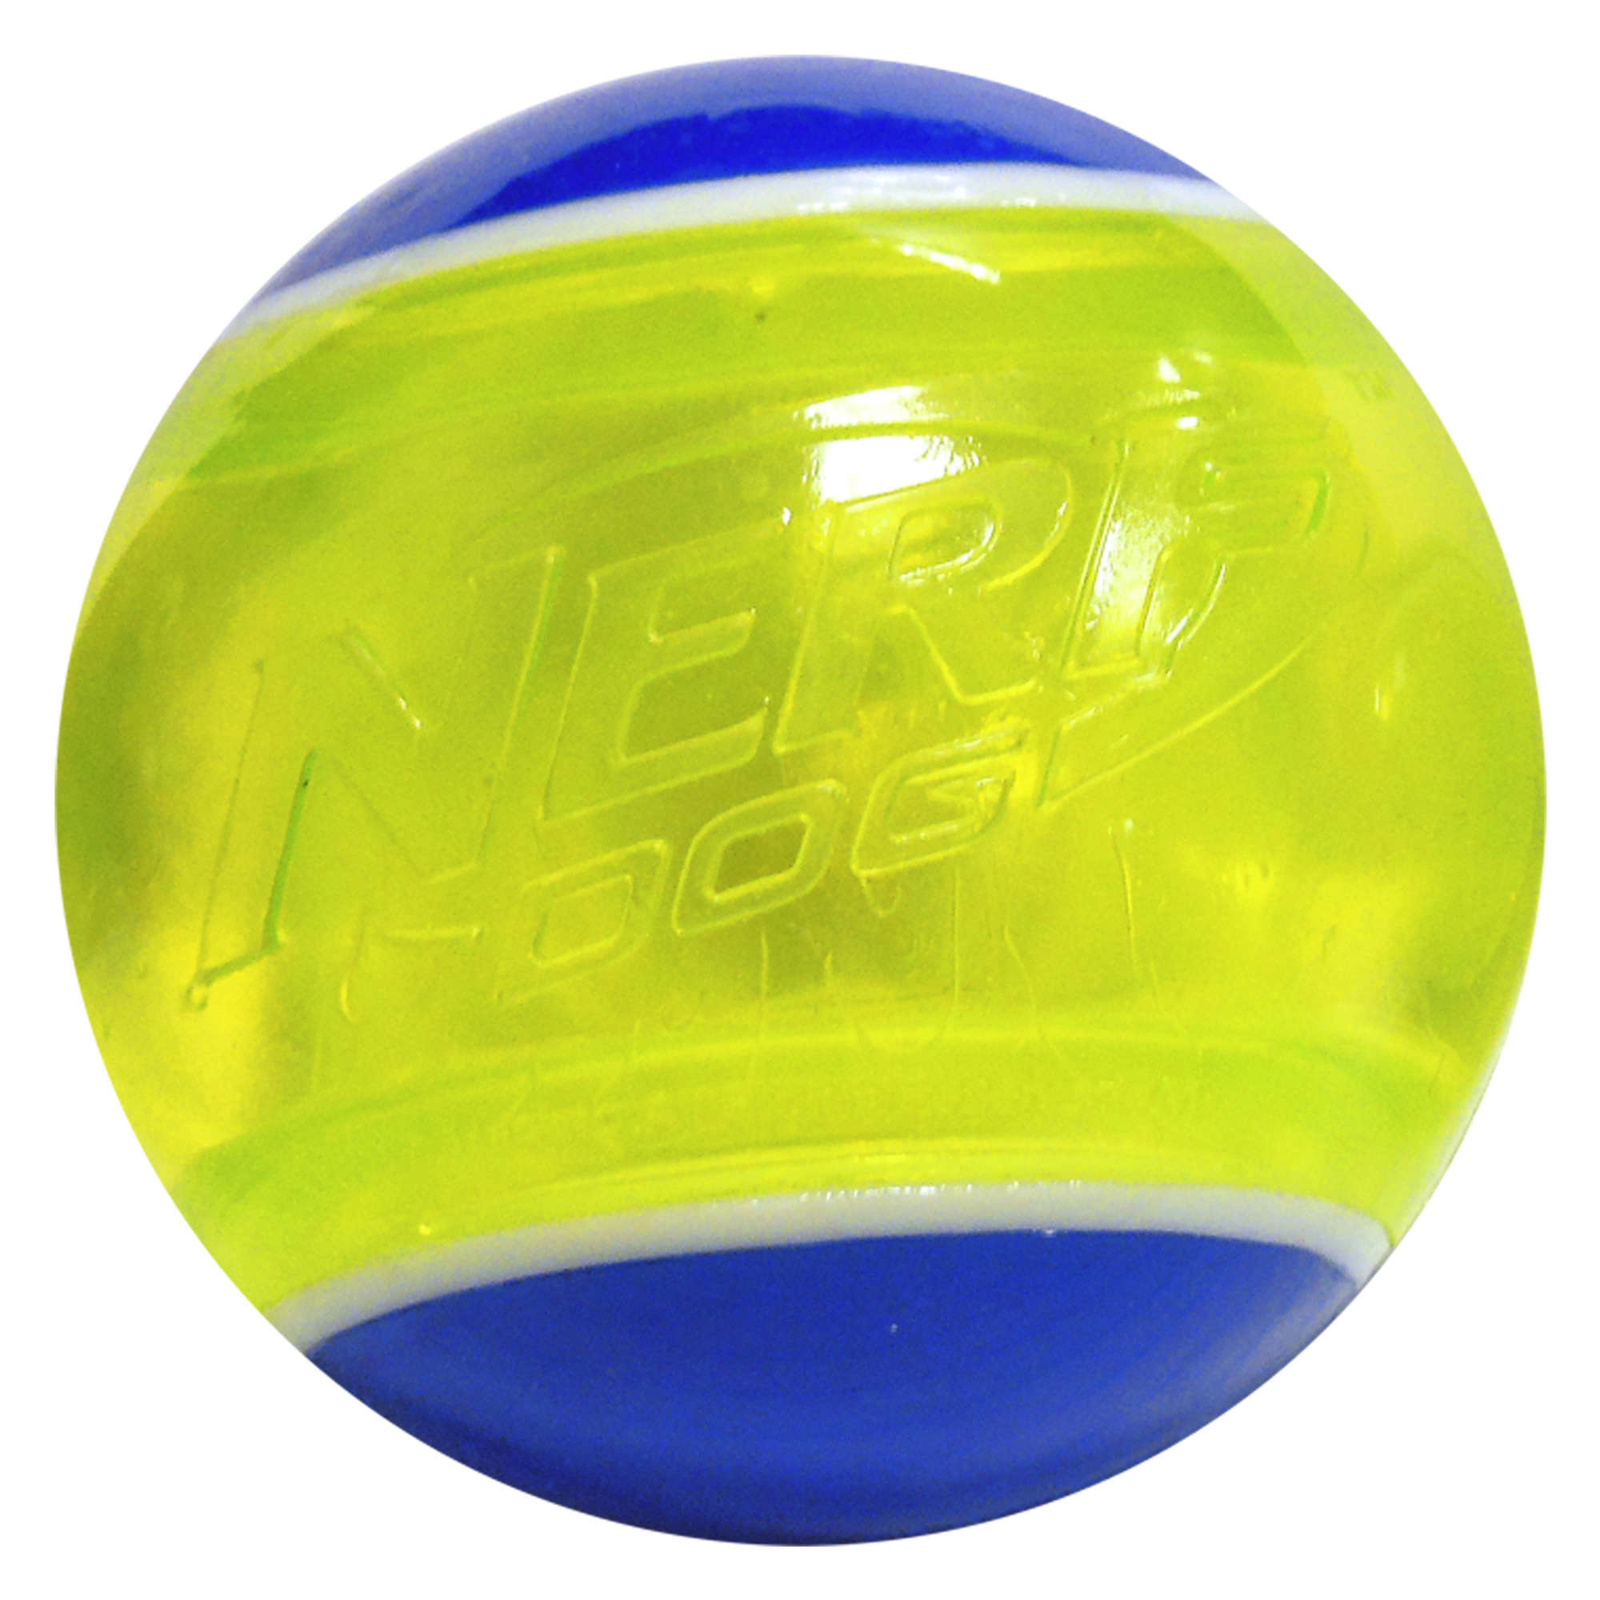 Nerf Nerf мяч светящийся прозрачный , 8 см, (синий/зеленый) (159 г) nerf nerf мяч для регби с плетеным шлейфом 48 см синий оранжевый зеленый красный 272 г